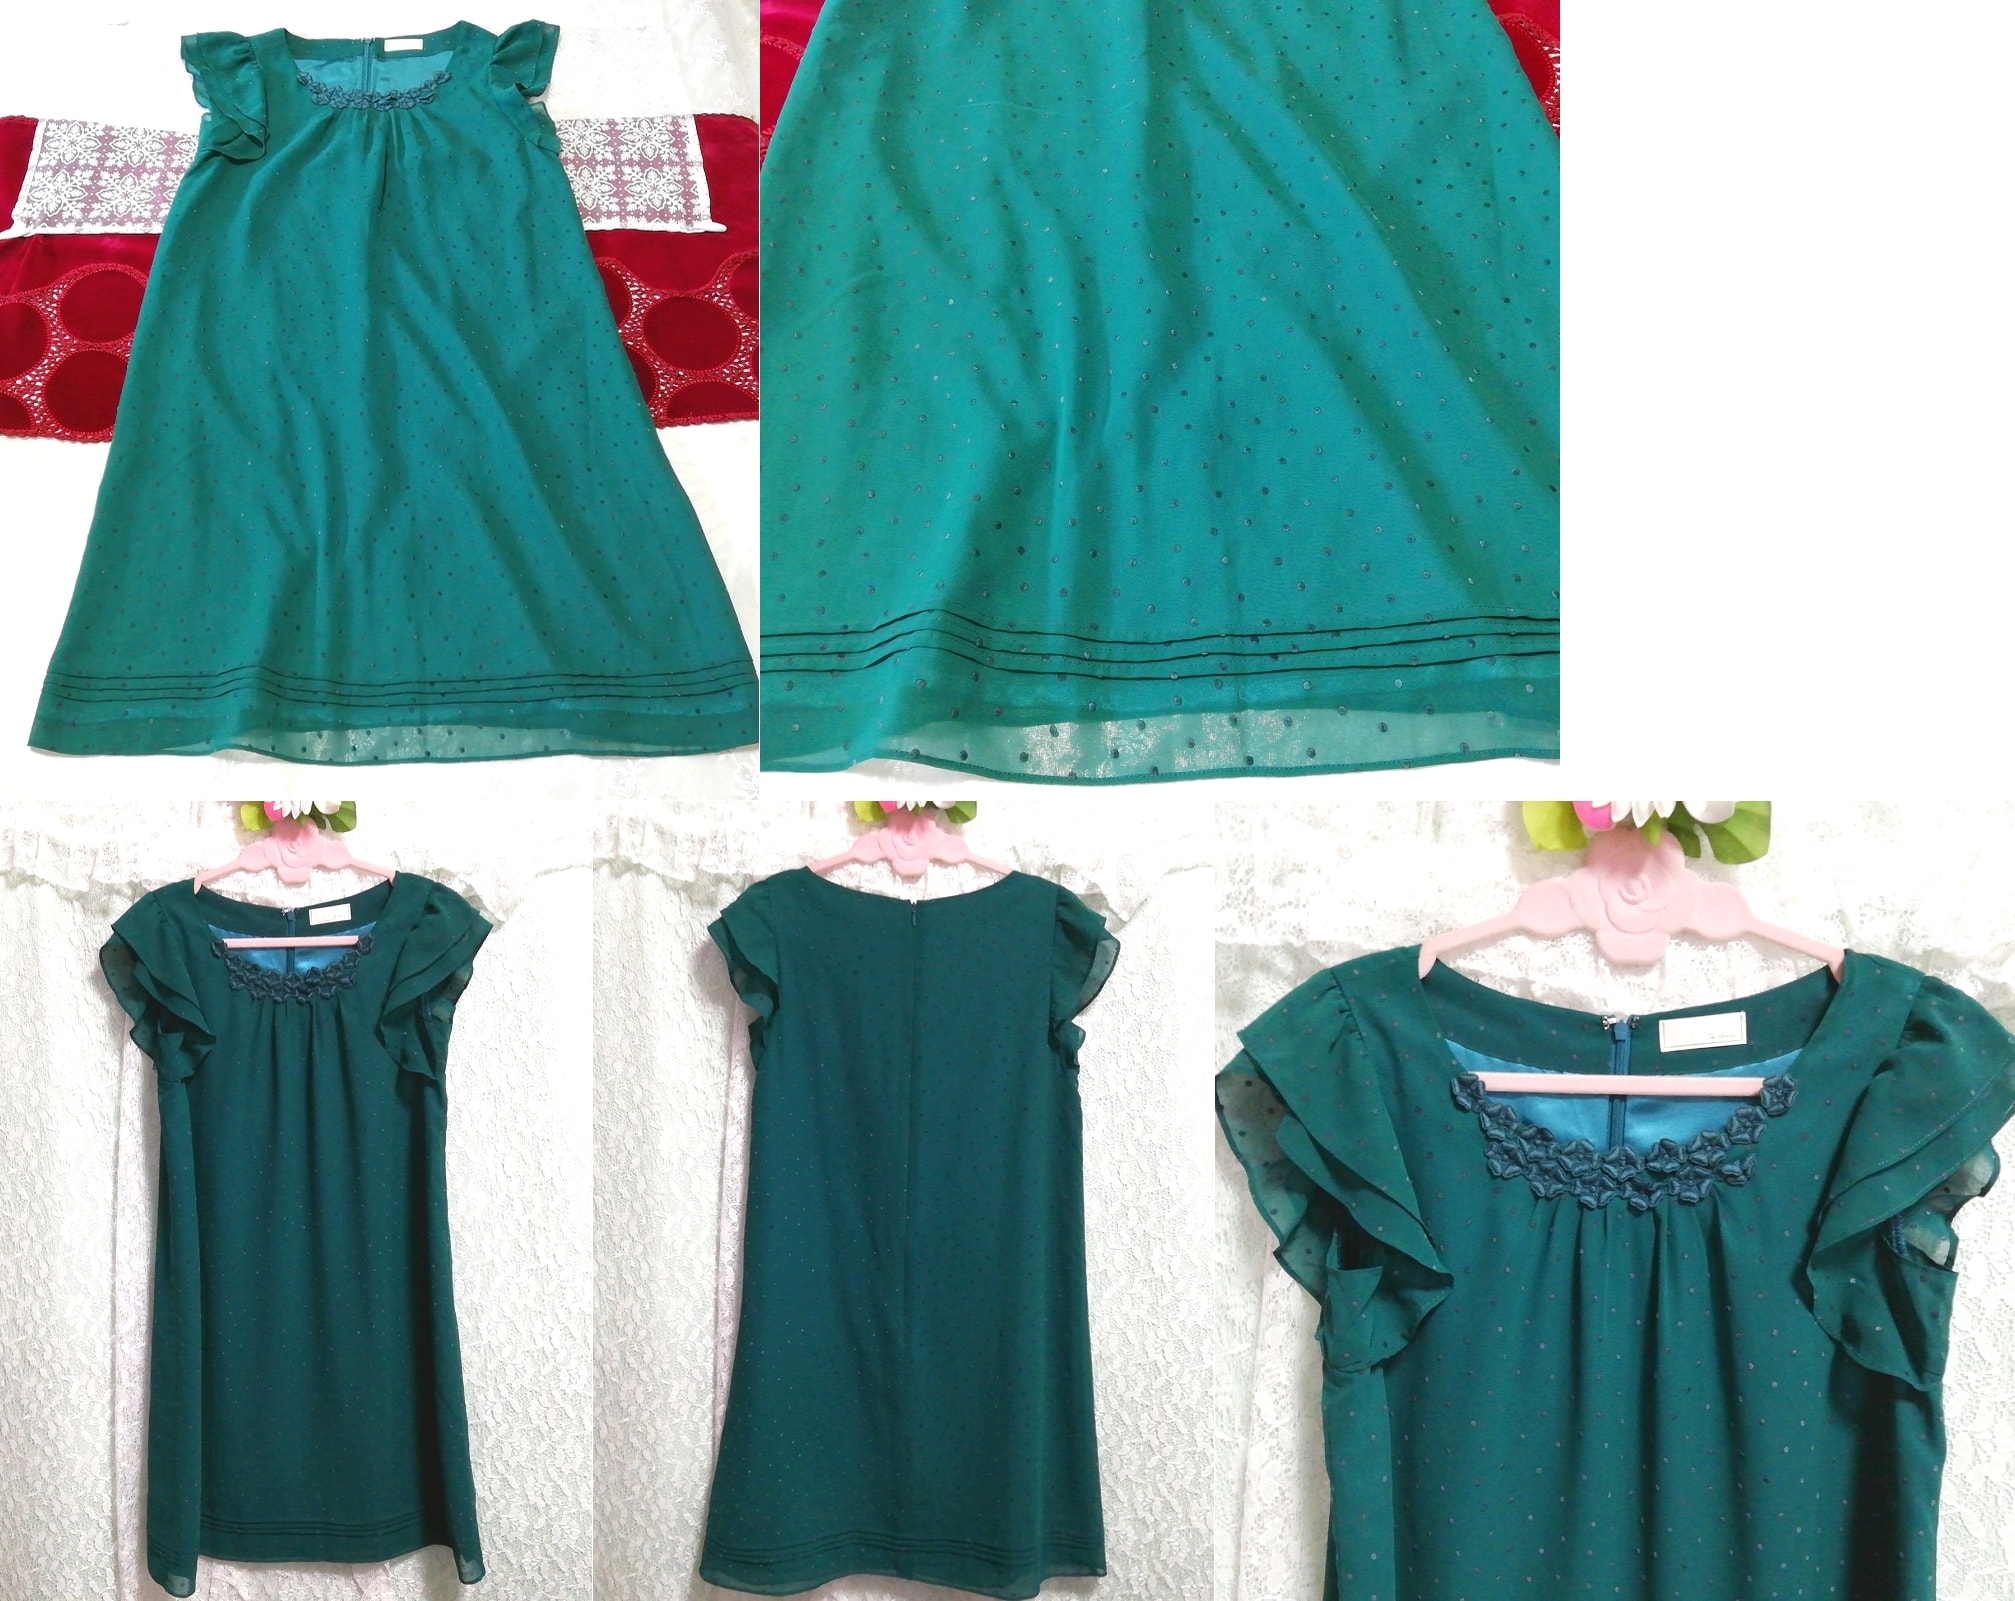 Green ruffle chiffon sleeveless tunic negligee nightgown dress, tunic, sleeveless, sleeveless, m size